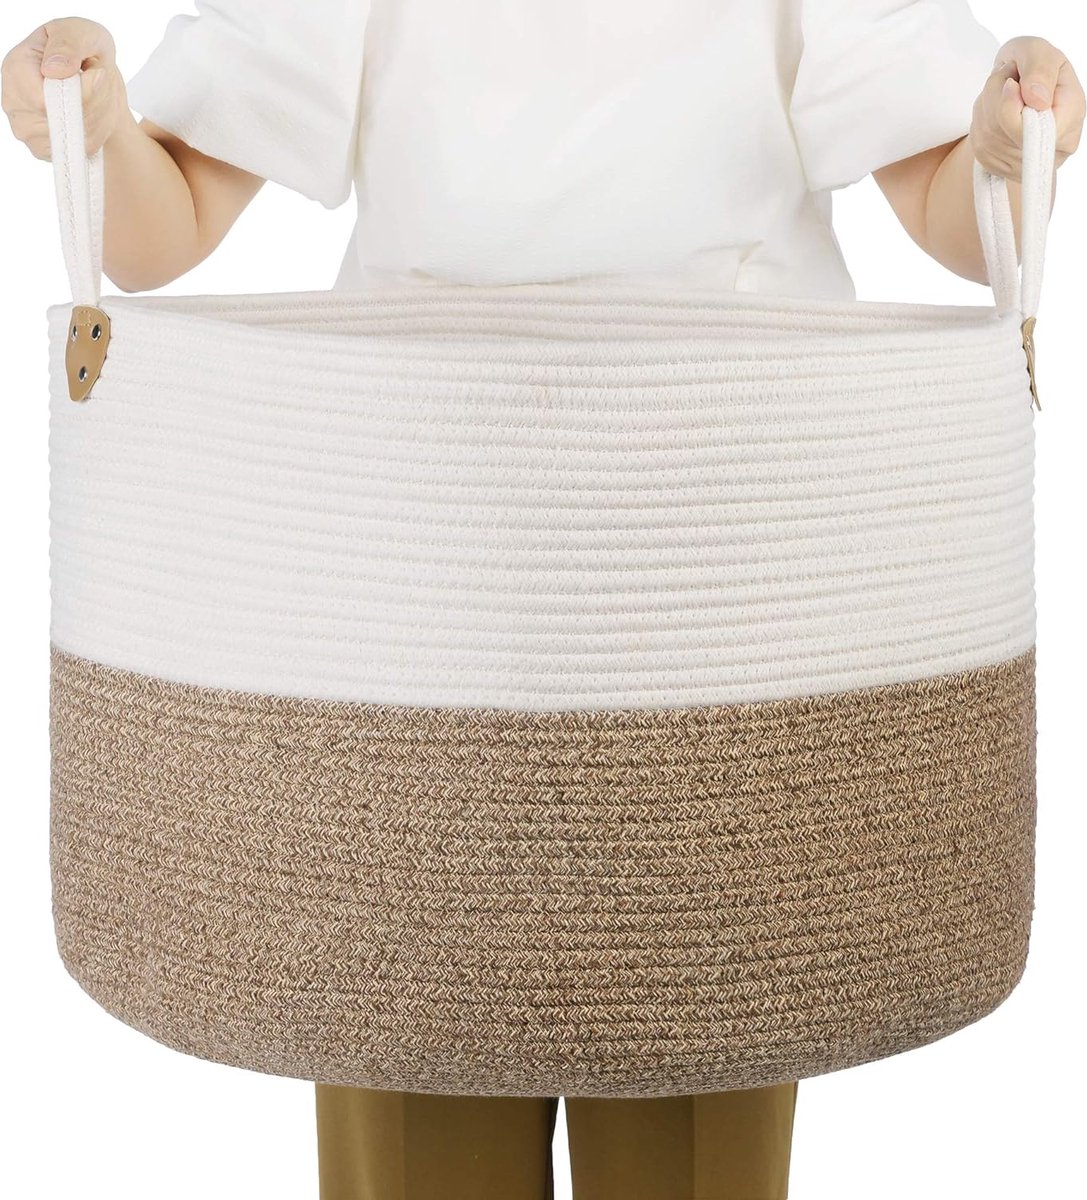 Katoenen touwmand, handgrepen, wasmand van katoen, 100 l, voor speelgoed, kleding, dekens, bruin-beige, 55 x 55 x 35 cm